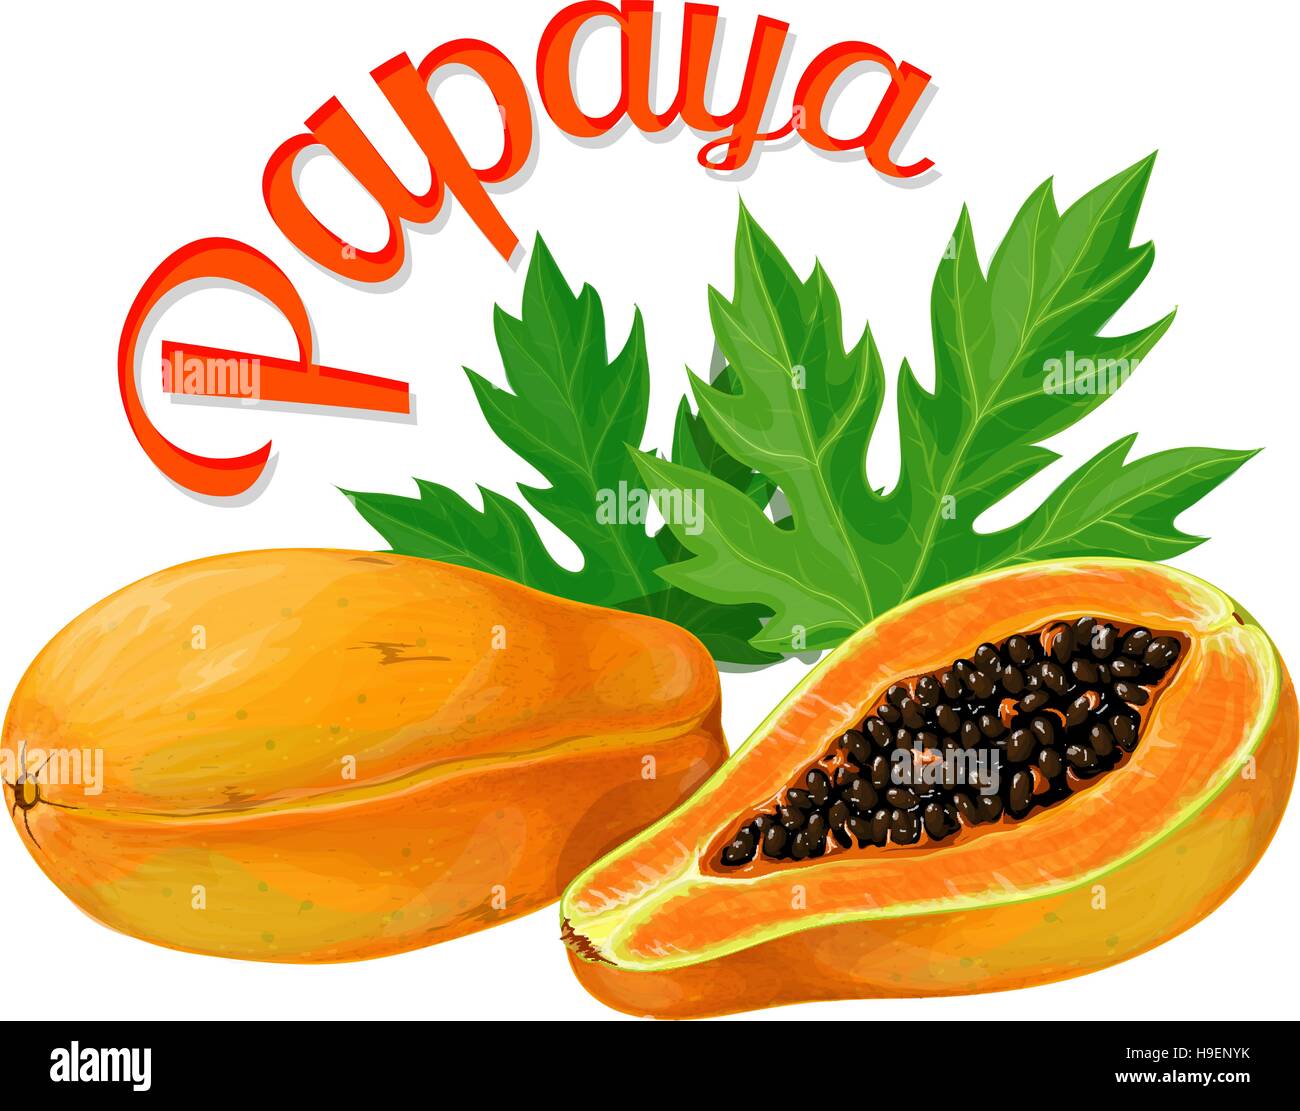 La papaye. Vector illustration réalisée dans un style réaliste Illustration de Vecteur